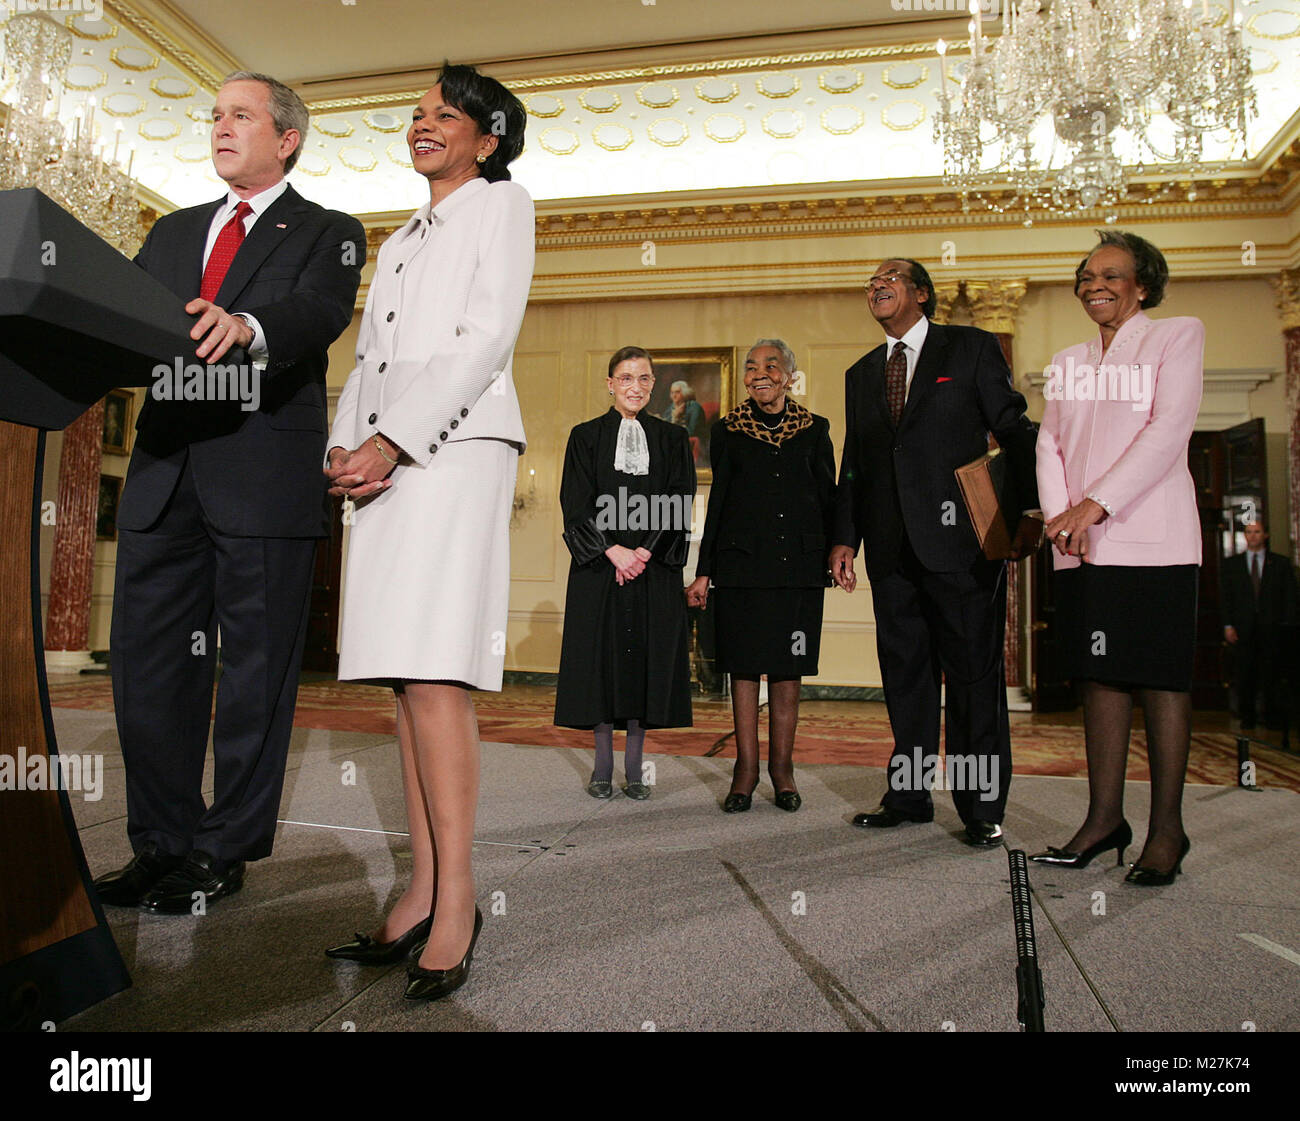 Il presidente americano George Bush, con il Segretario Rice della zia Genova "Gee'McPhatter(R), lo zio Alto Ray(2R), Zia Mattie obbligazioni(3R) e la Corte Suprema di Giustizia Ruth Bader Ginsberg(3L) introduce il Segretario di Stato Condoleezza Rice durante un giuramento nella cerimonia di Benjamin Franklin Room del Dipartimento di Stato a Washington, DC venerdì 28 gennaio 2005. Segretario del riso, che è la seconda donna e la prima donna nera a diventare segretario di Stato, è stato giurato in dal capo del personale della Casa Bianca, Andrew Card mercoledì sera, ore dopo il senato ha confermato la sua con un voto di 85 a 13, in un privato cerimon Foto Stock